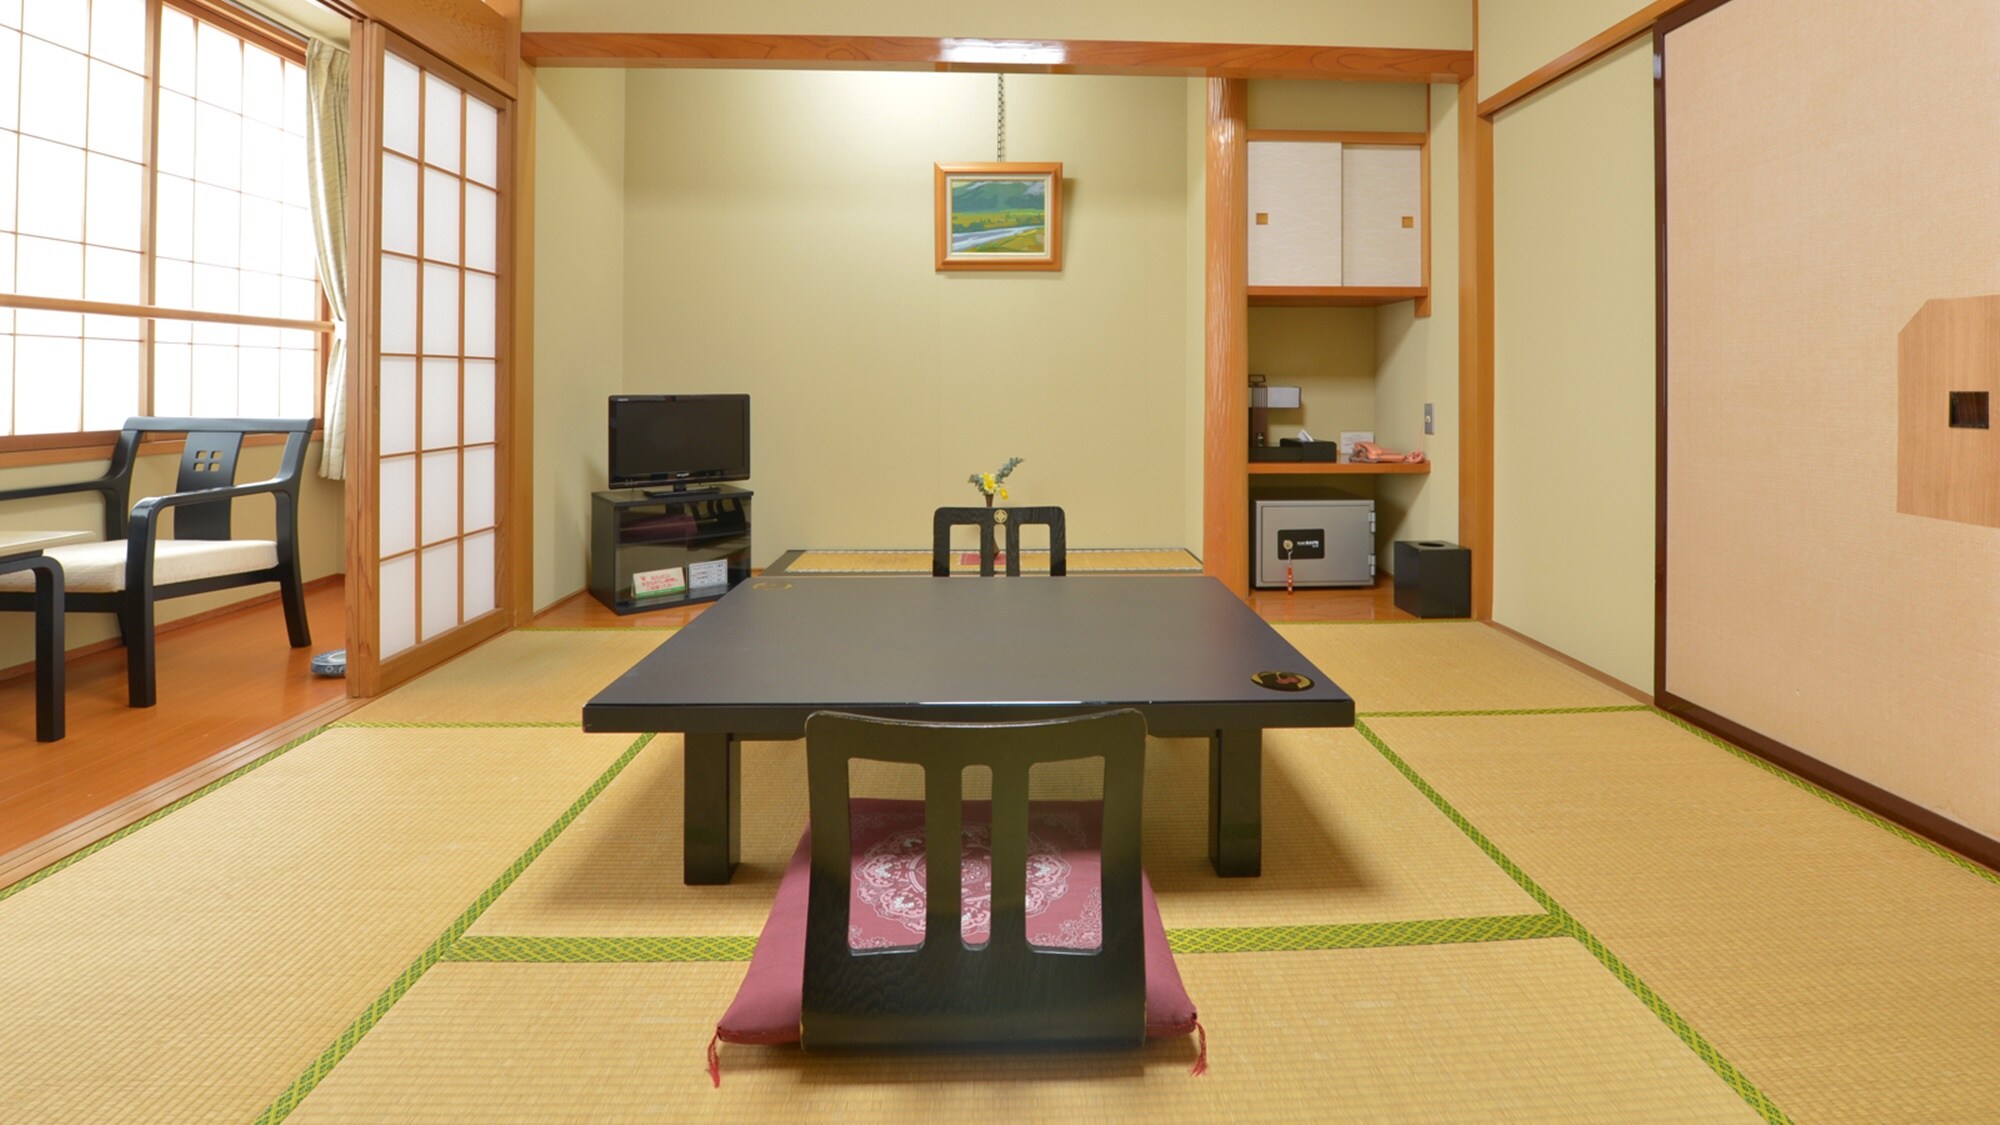 * [8张榻榻米的日式房间示例]请度过轻松而安静的时光。